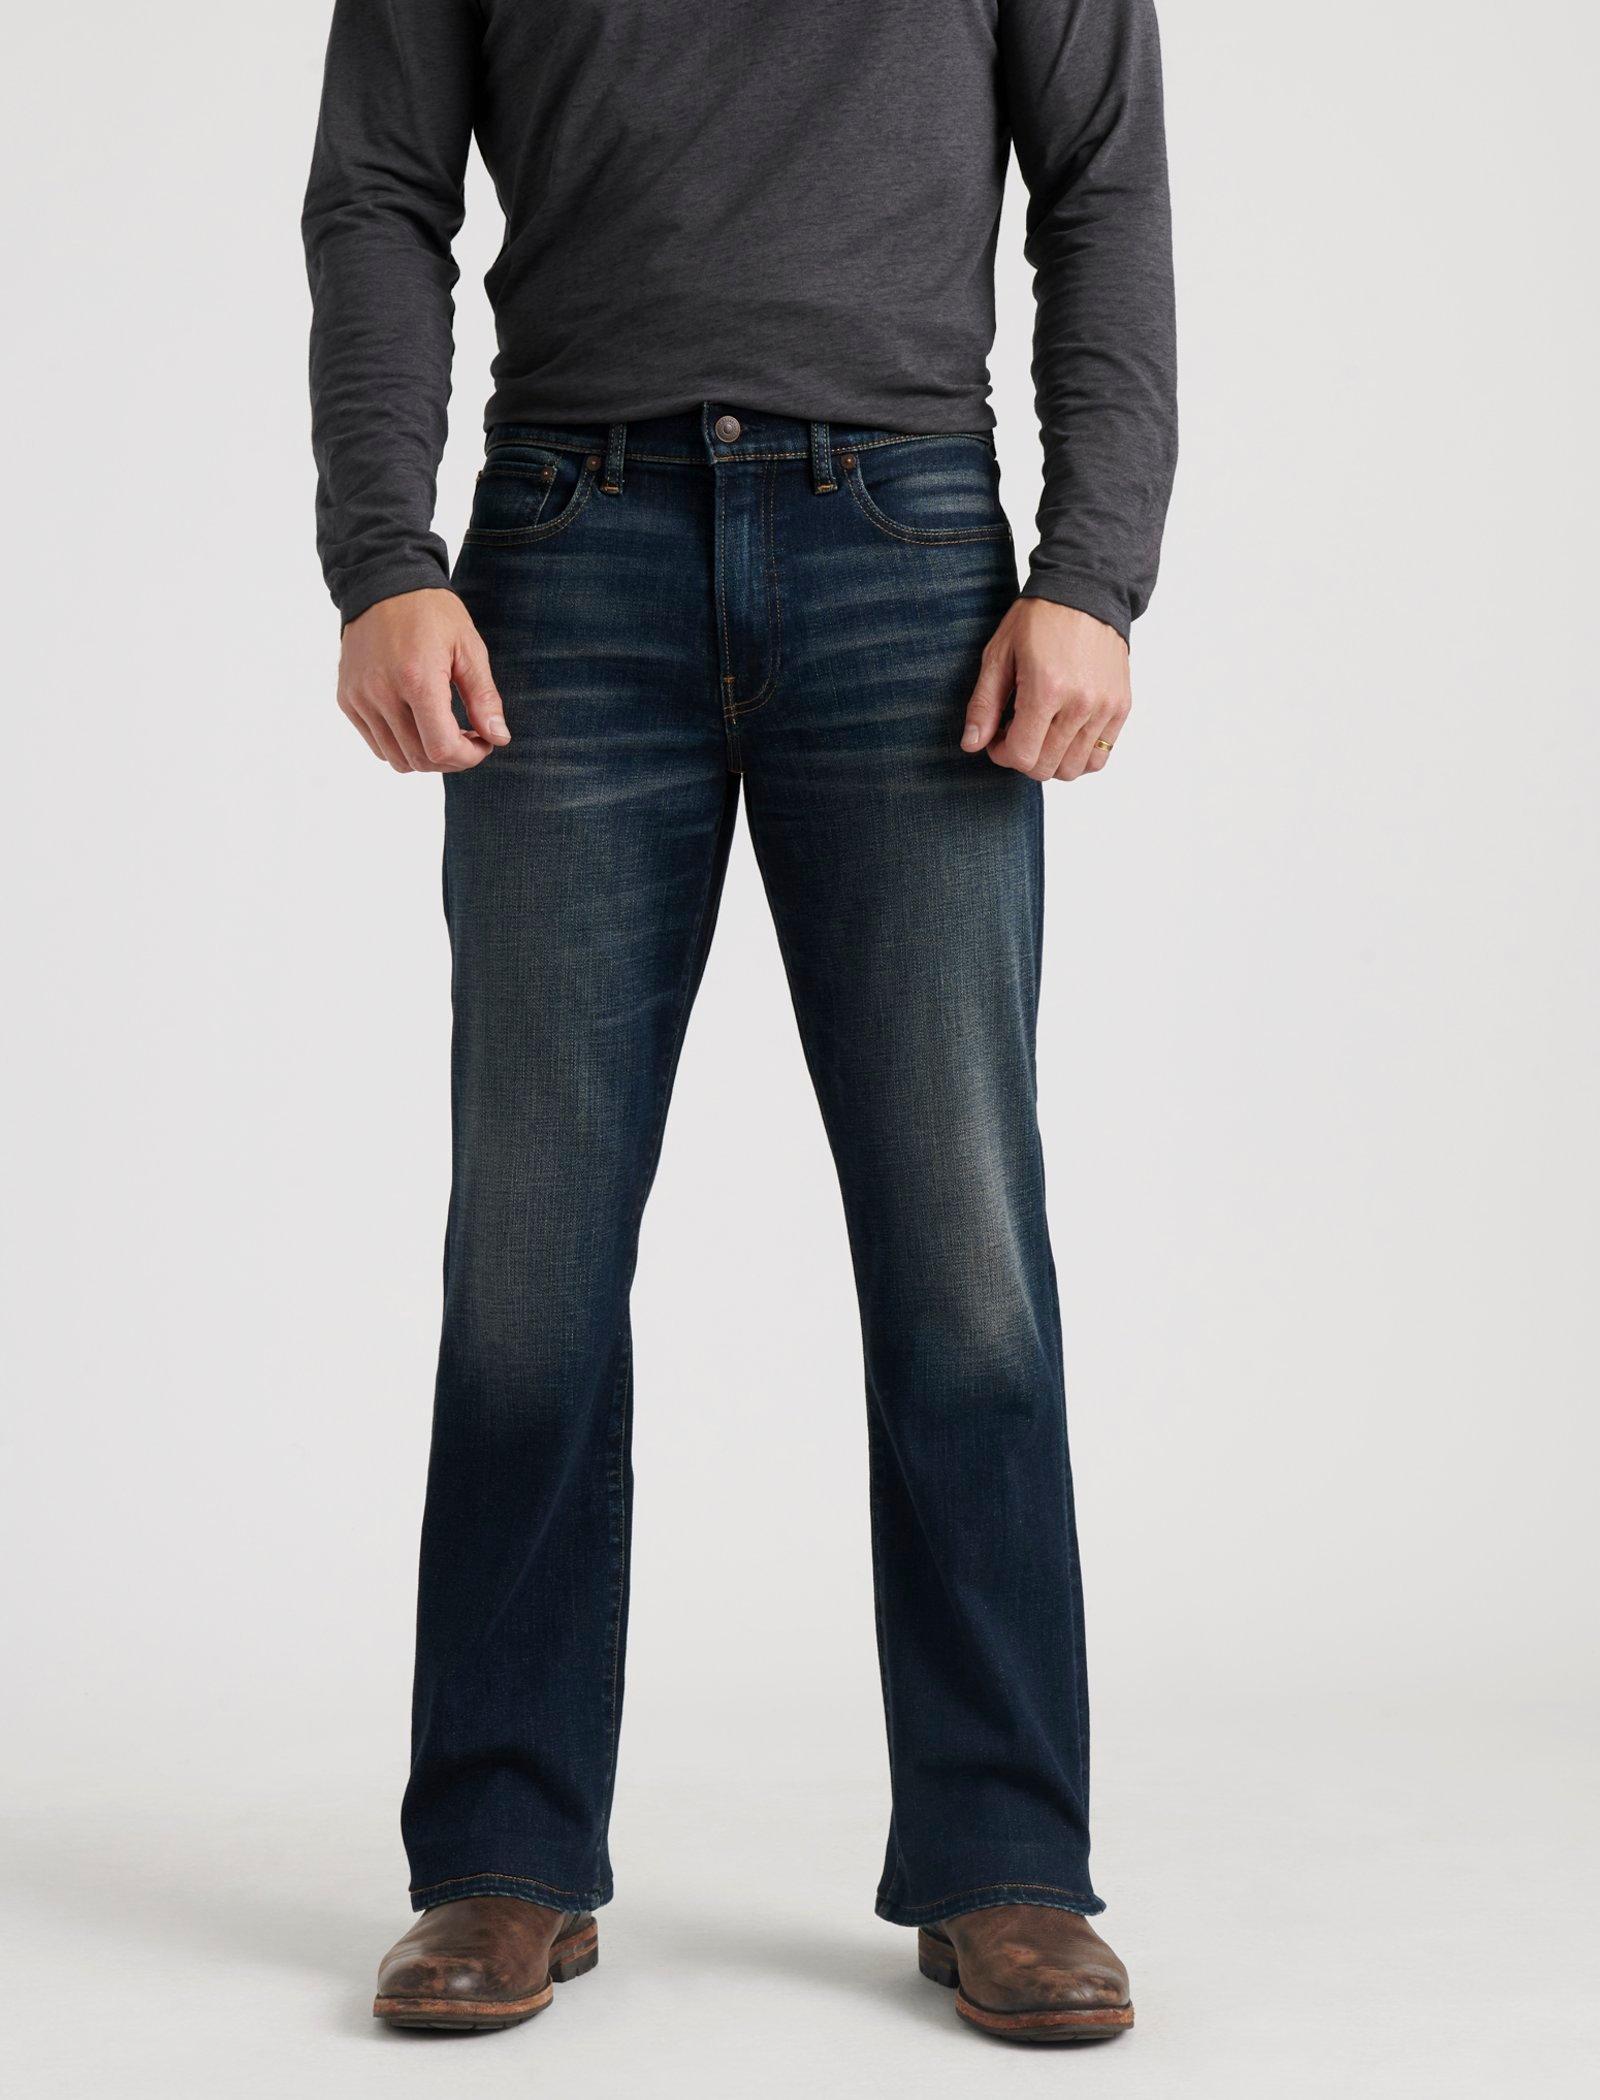 men's boot cut jeans